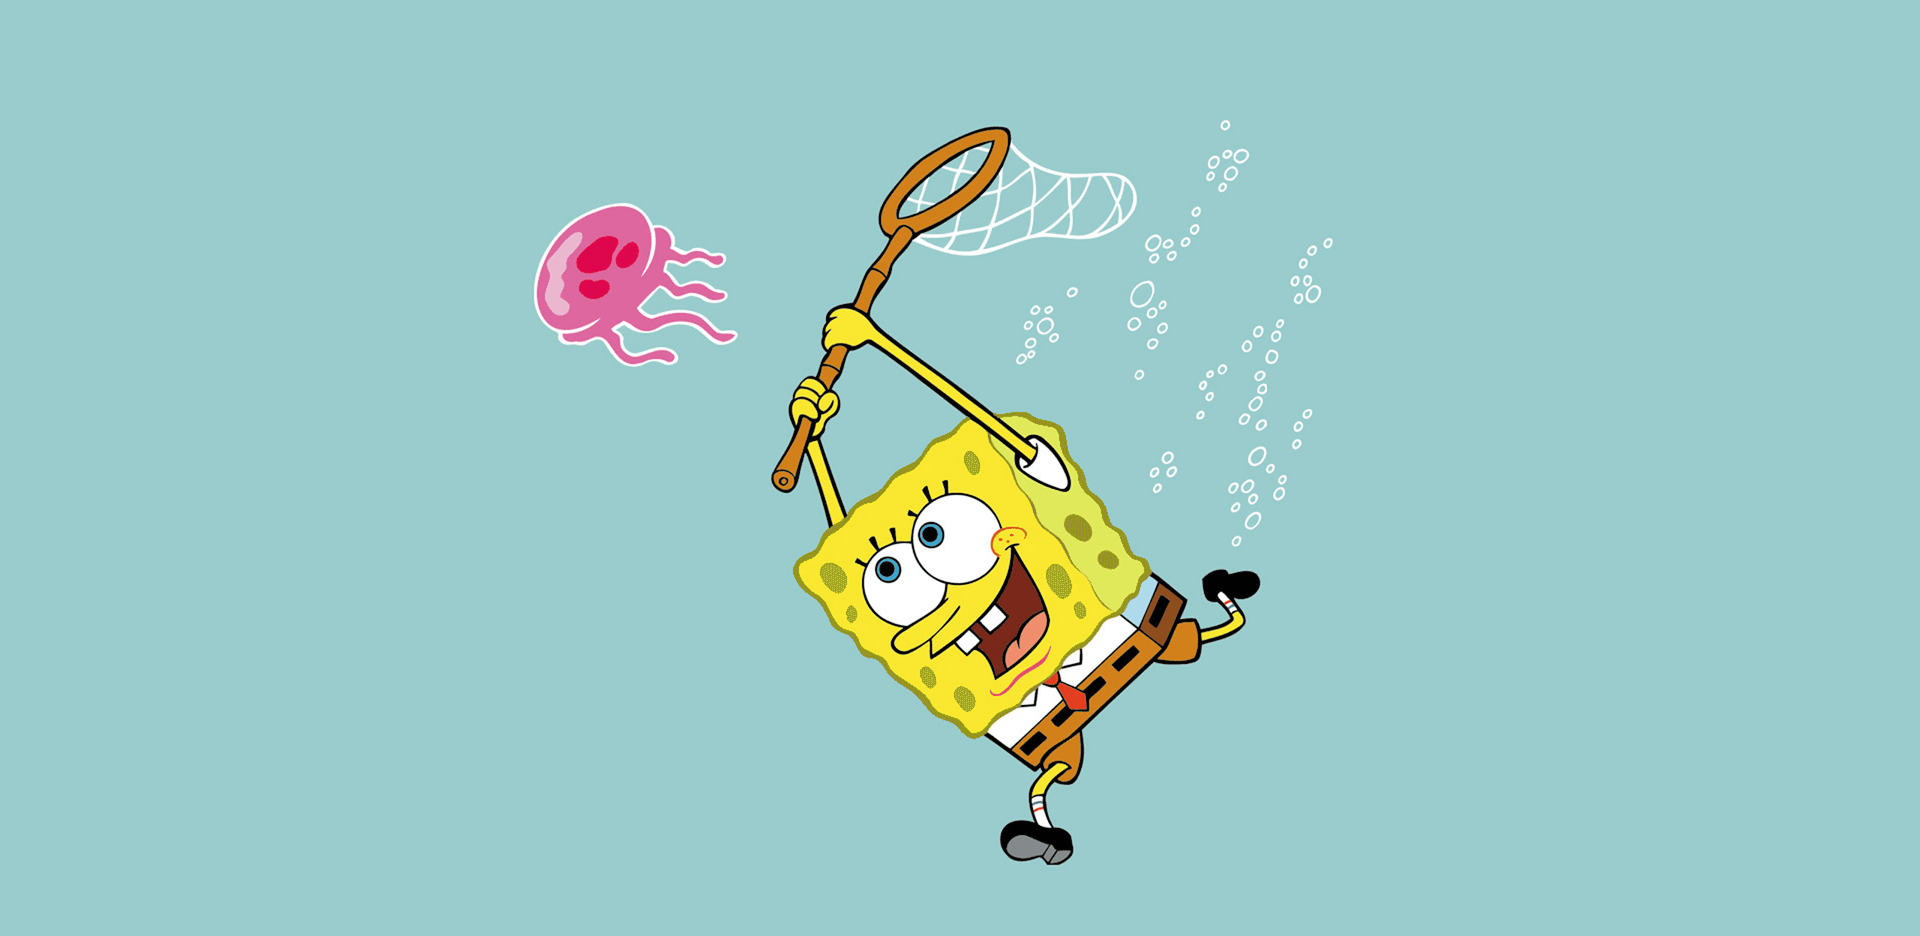 spongebob2.png